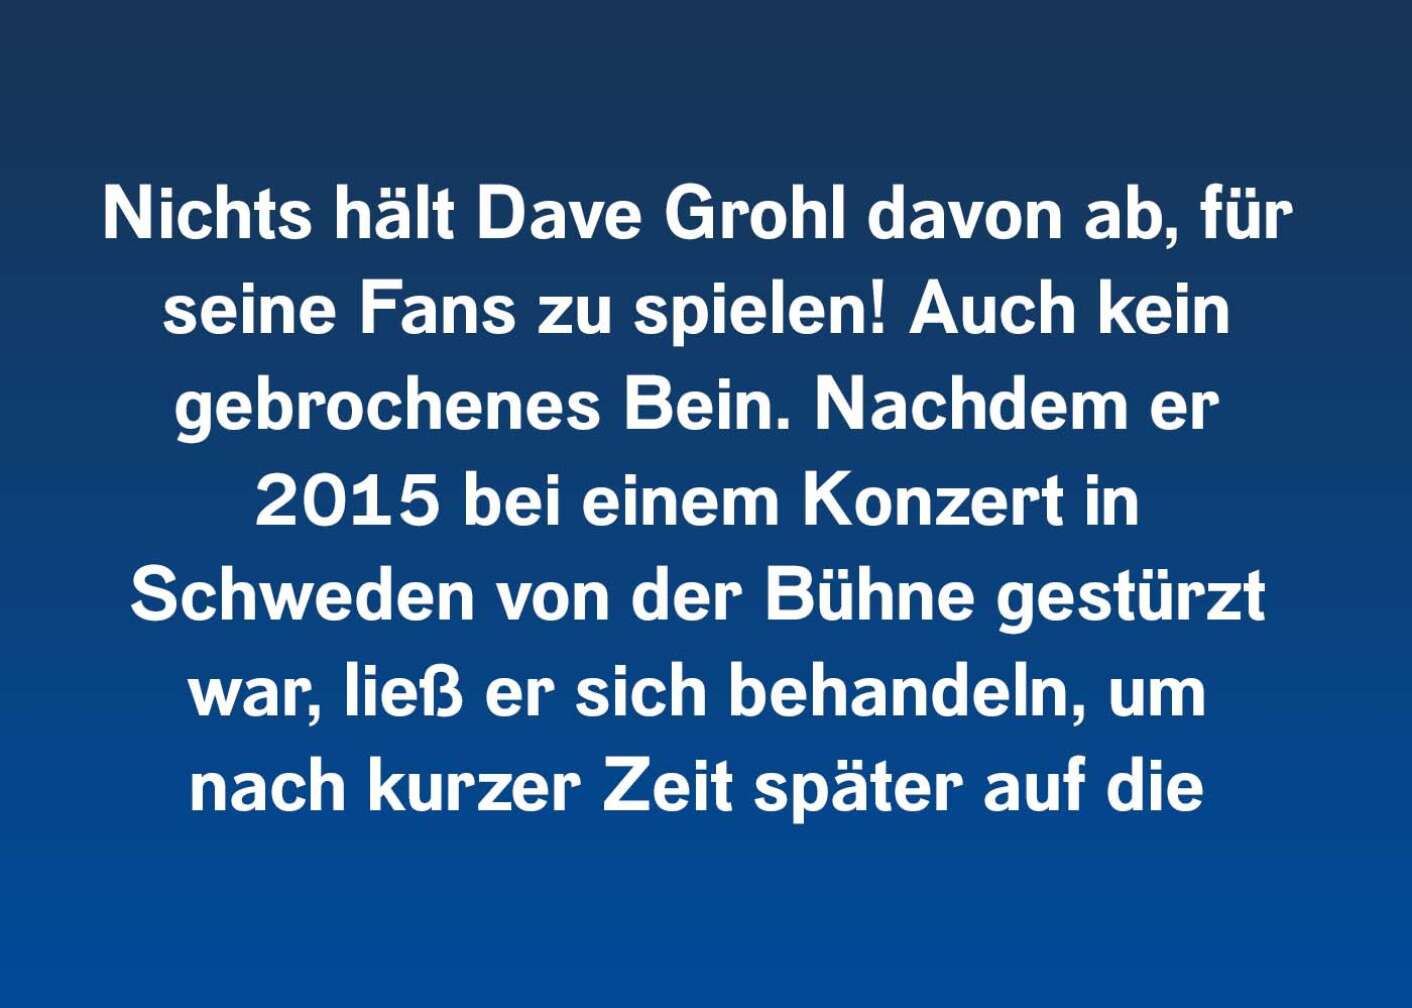 Nichts hält Dave Grohl davon ab, für seine Fans zu spielen! Auch kein gebrochenes Bein. Nachdem er 2015 bei einem Konzert in Schweden von der Bühne gestürzt war, ließ er sich behandeln, um nach kurzer Zeit später auf die Stage zurückzukehren, um weiterzuspielen.